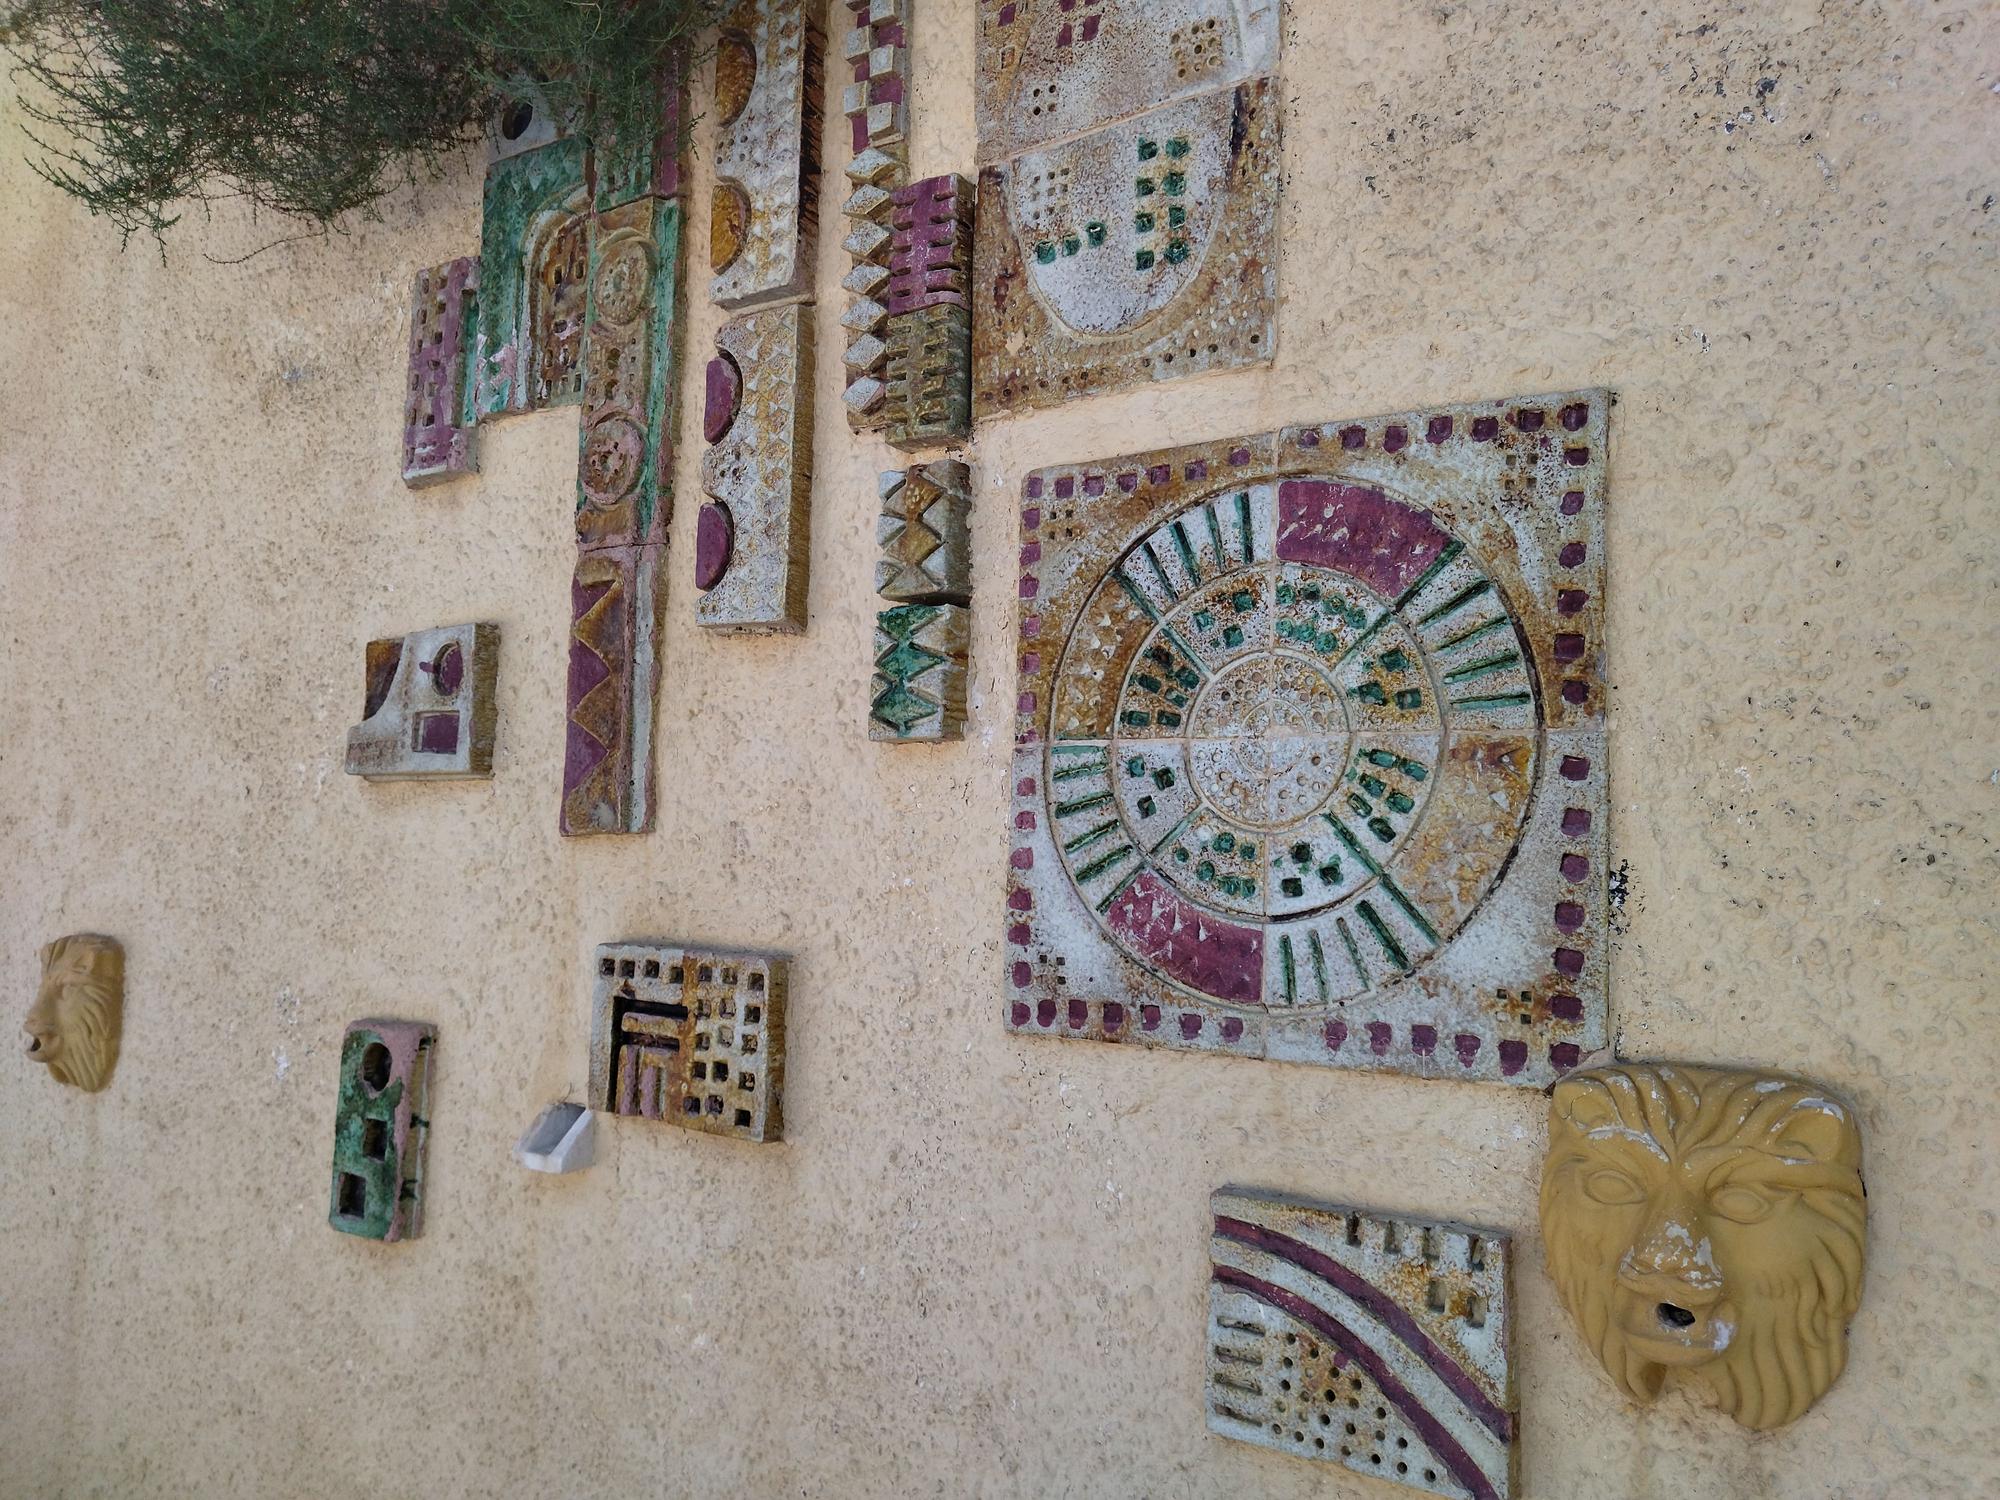 Deterioro, decoración hortera y rastro de okupas: Así es el Casal d'Ifac de Calp